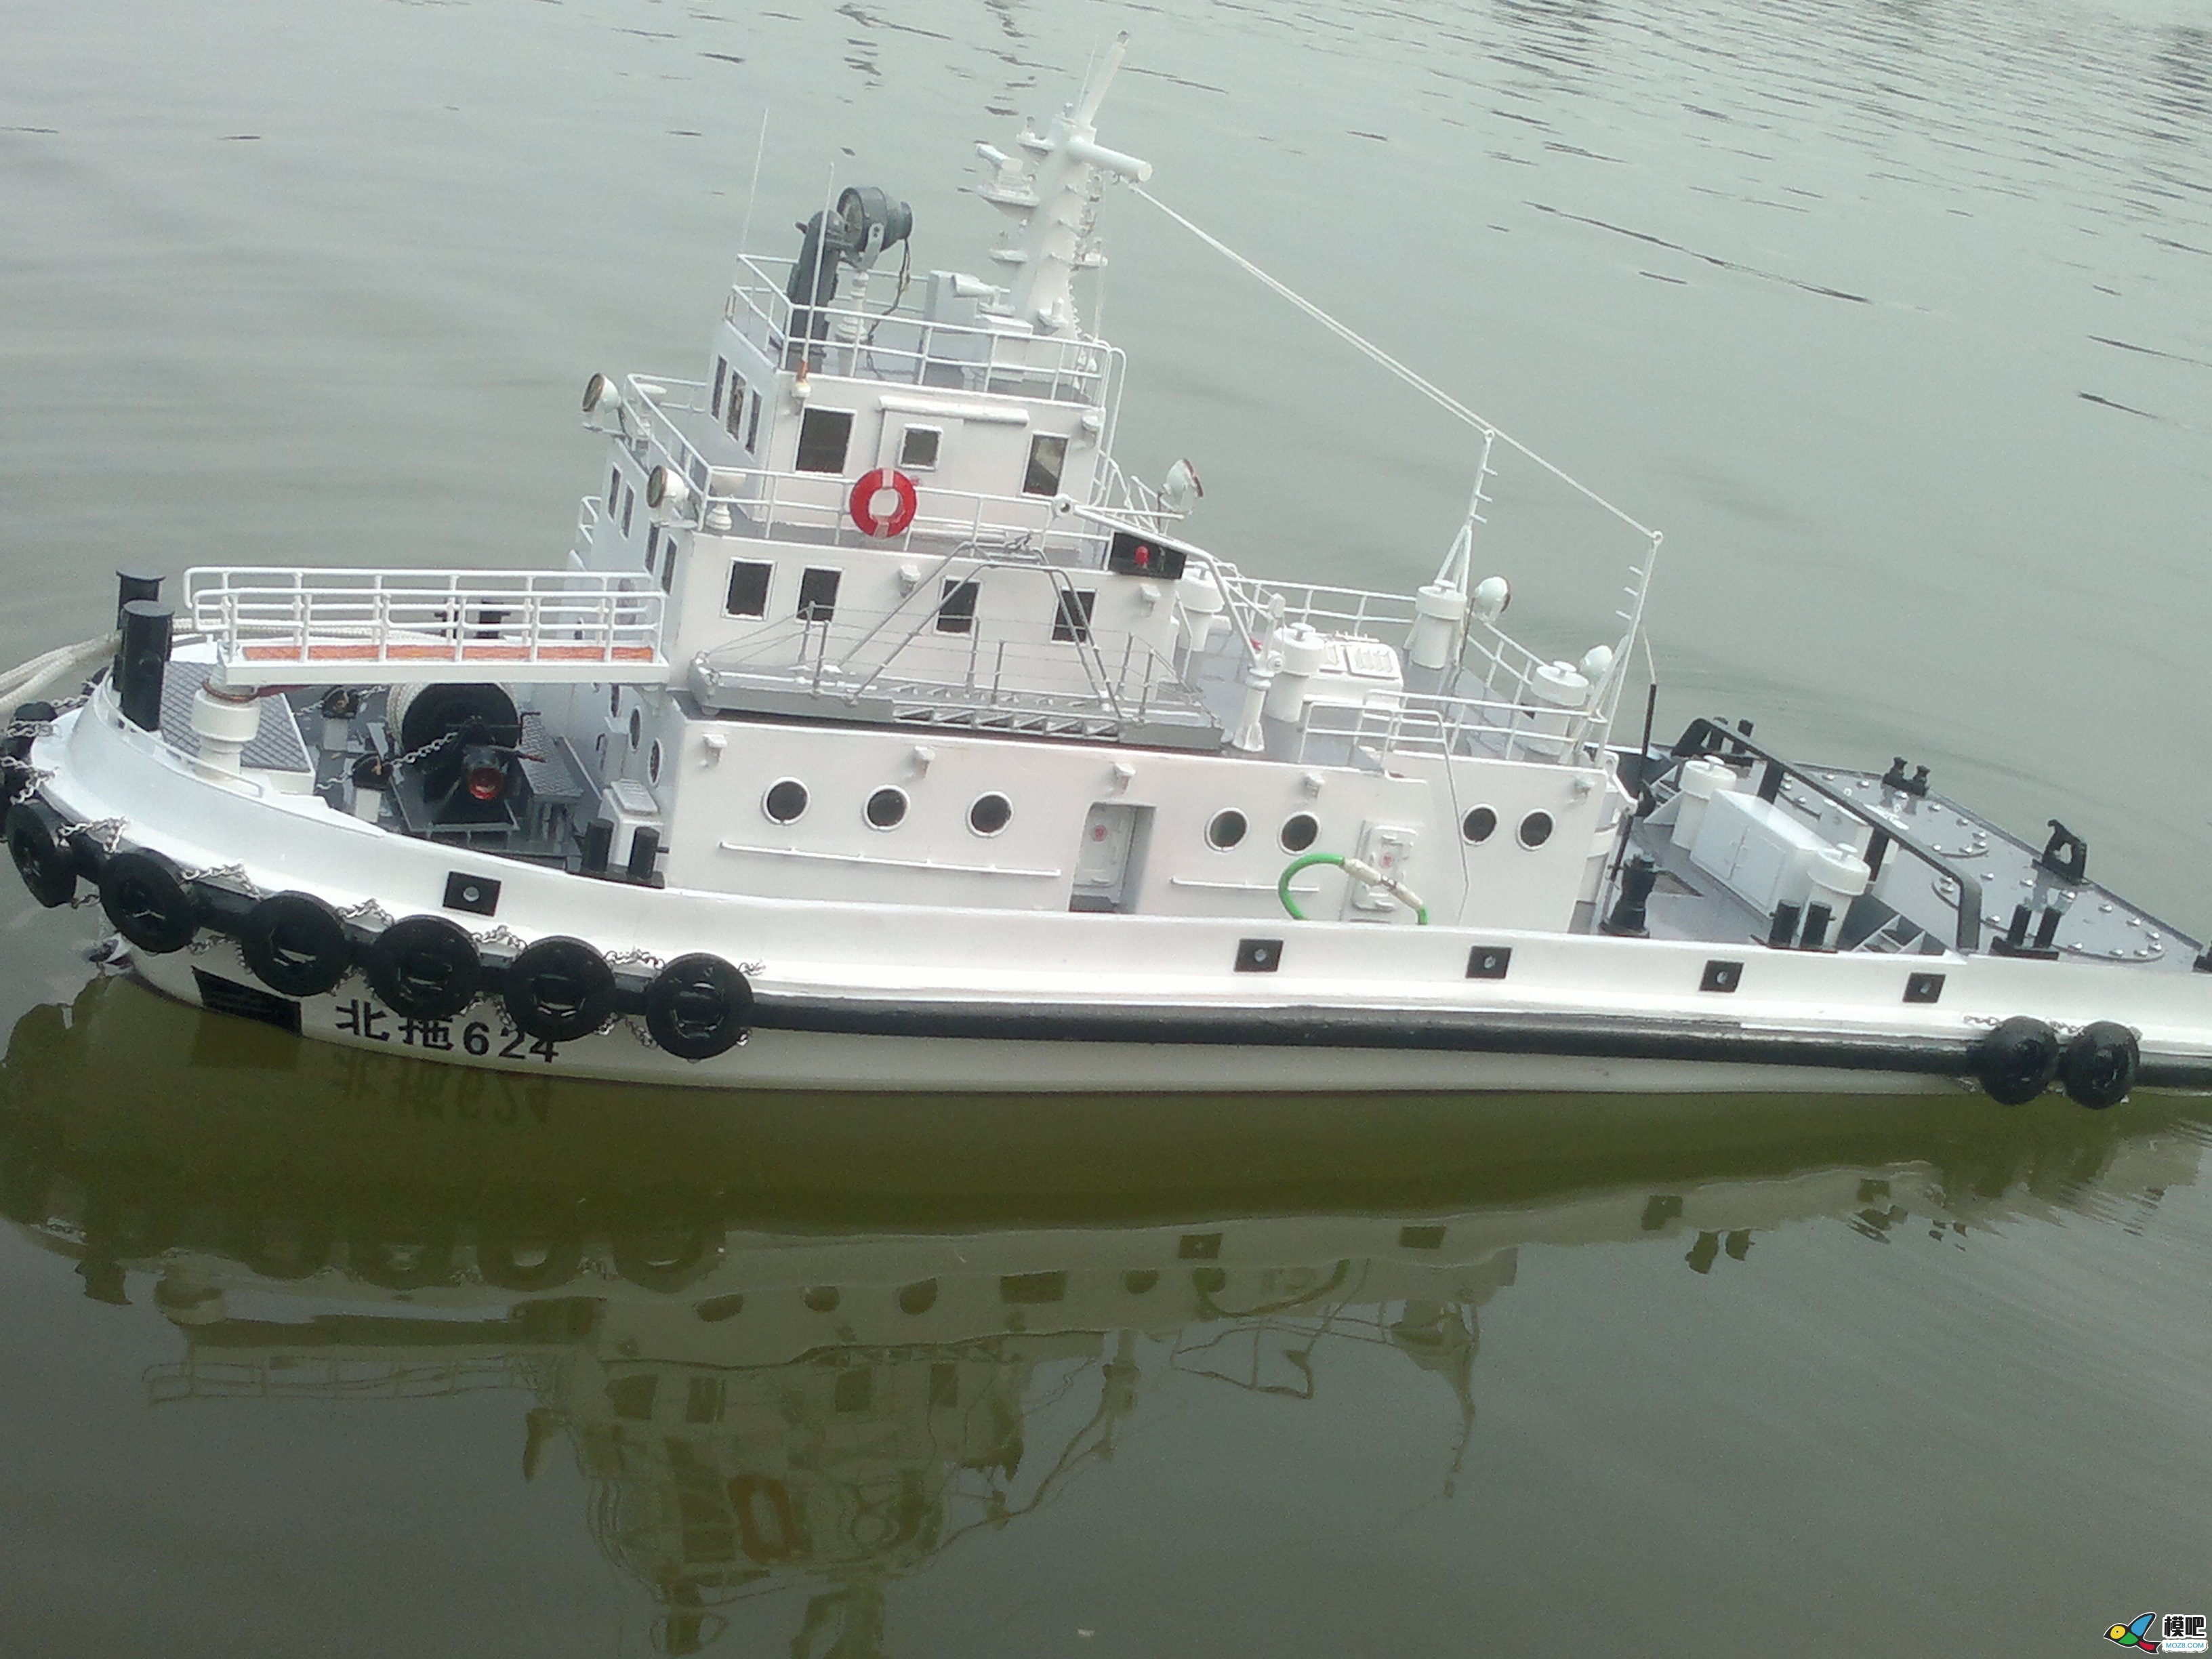 因为怀念所以制作，海军拖船制作小记 海军小型拖船,中国海军拖船,海军布缆船 作者:艇长 4028 